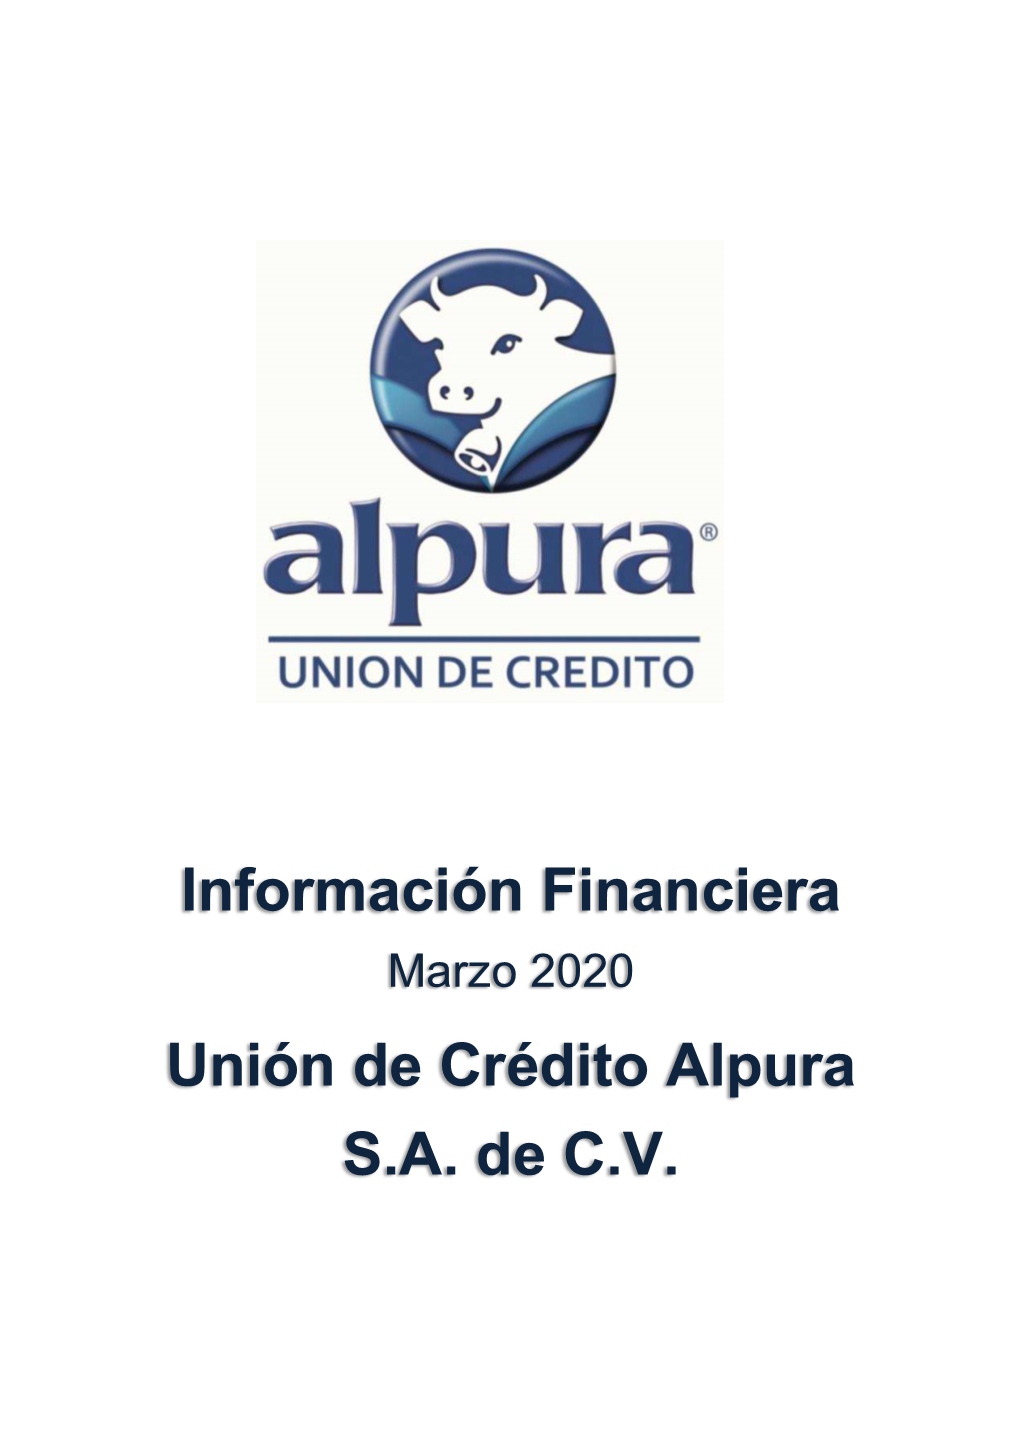 Información Financiera Unión De Crédito Alpura S.A. De C.V